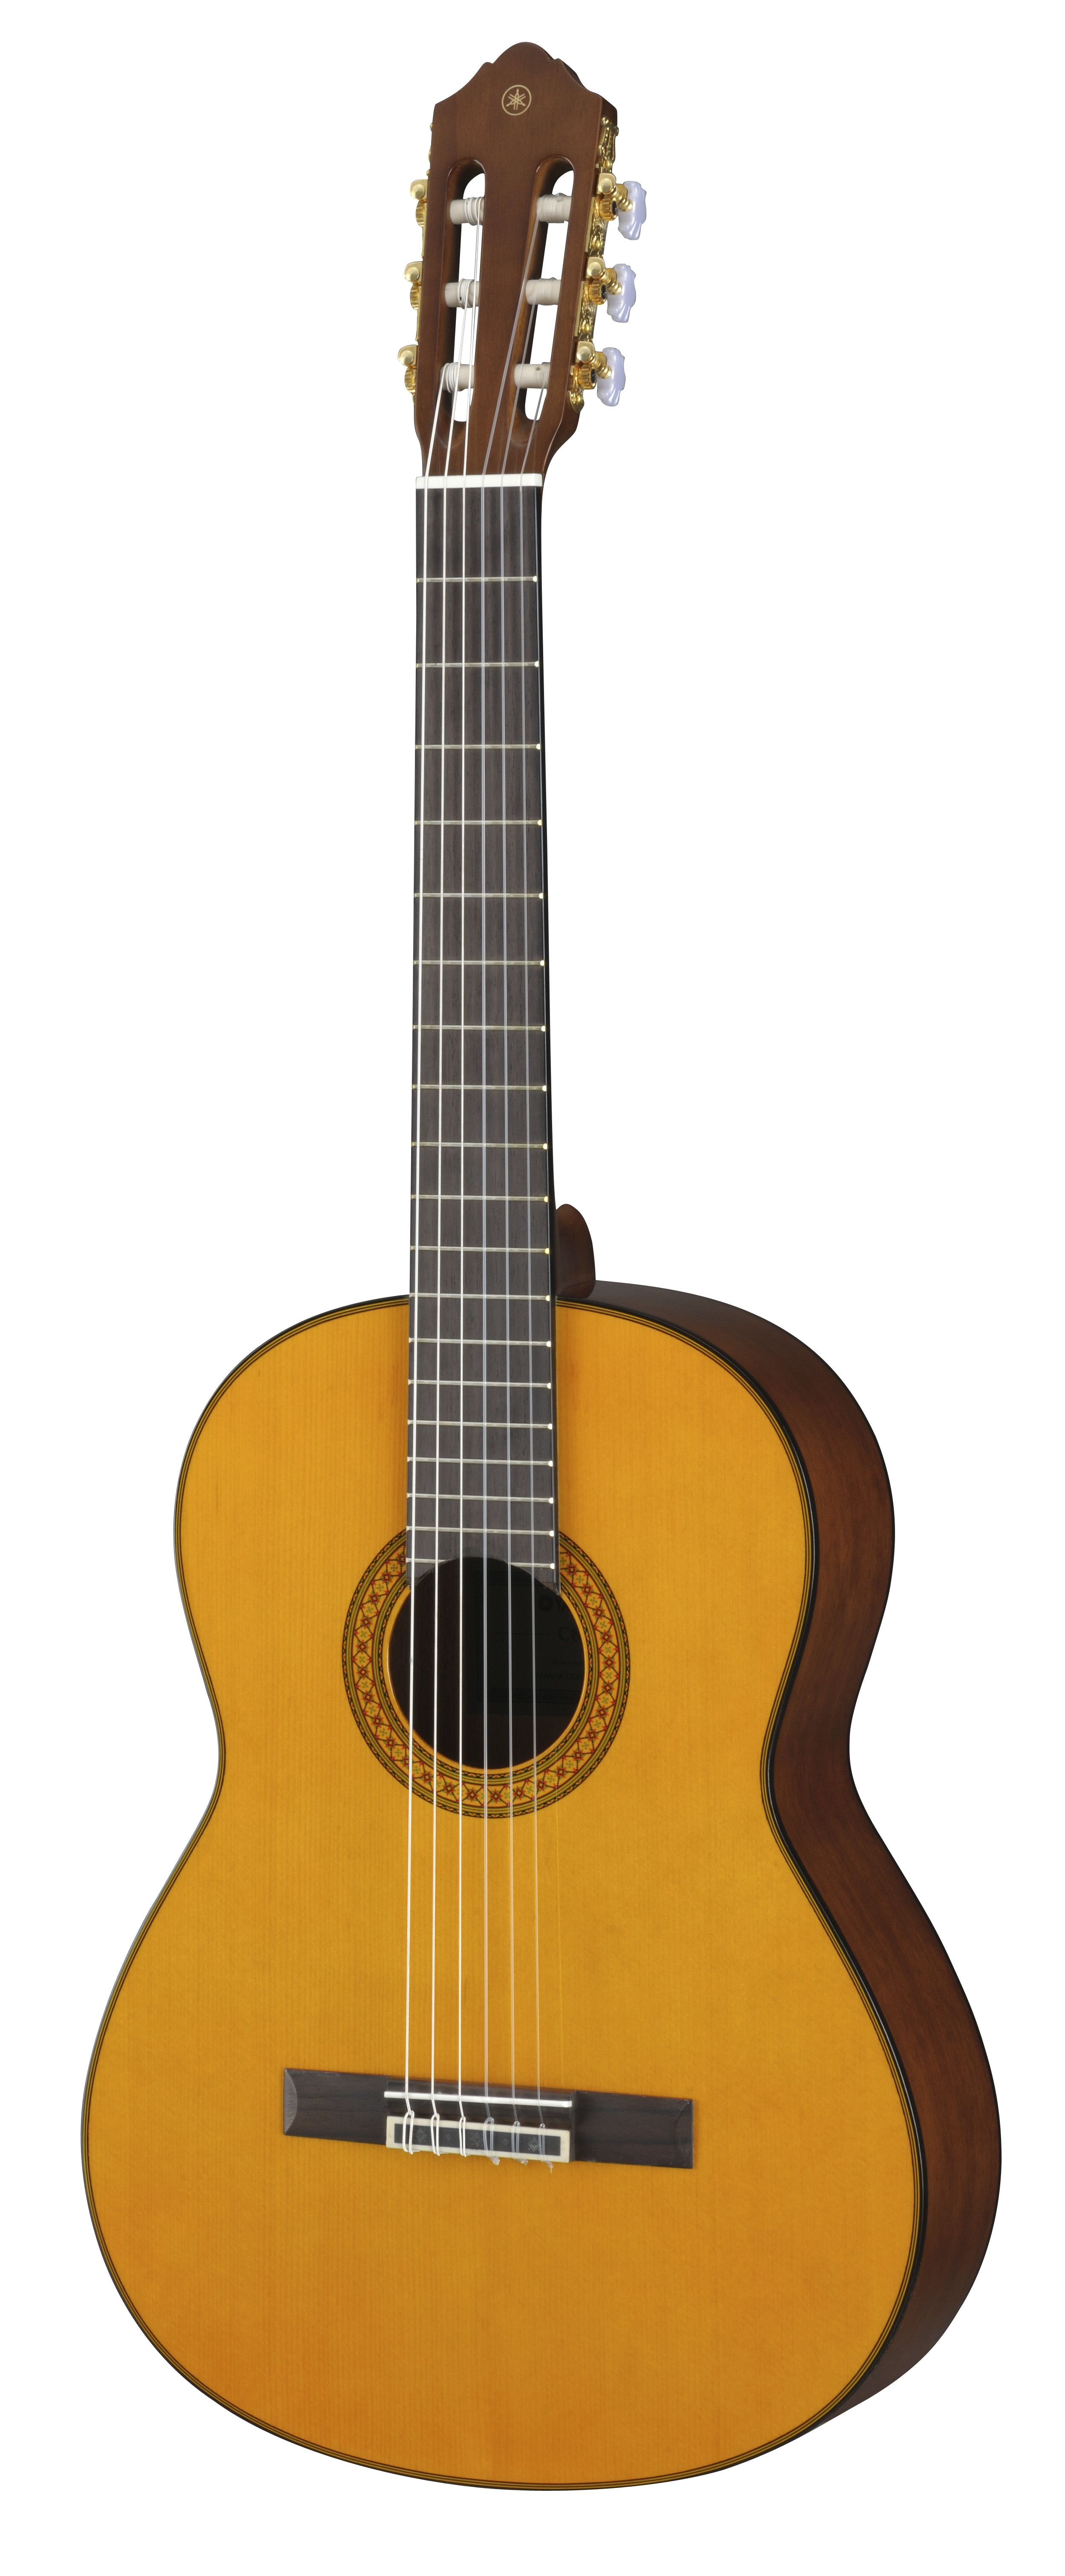 rotación Vegetales preposición C / CX - Descripción - Clásicas y con cuerdas de nailon - Guitarras, Bajos  y Amplificadores - Instrumentos musicales - Productos - Yamaha - España